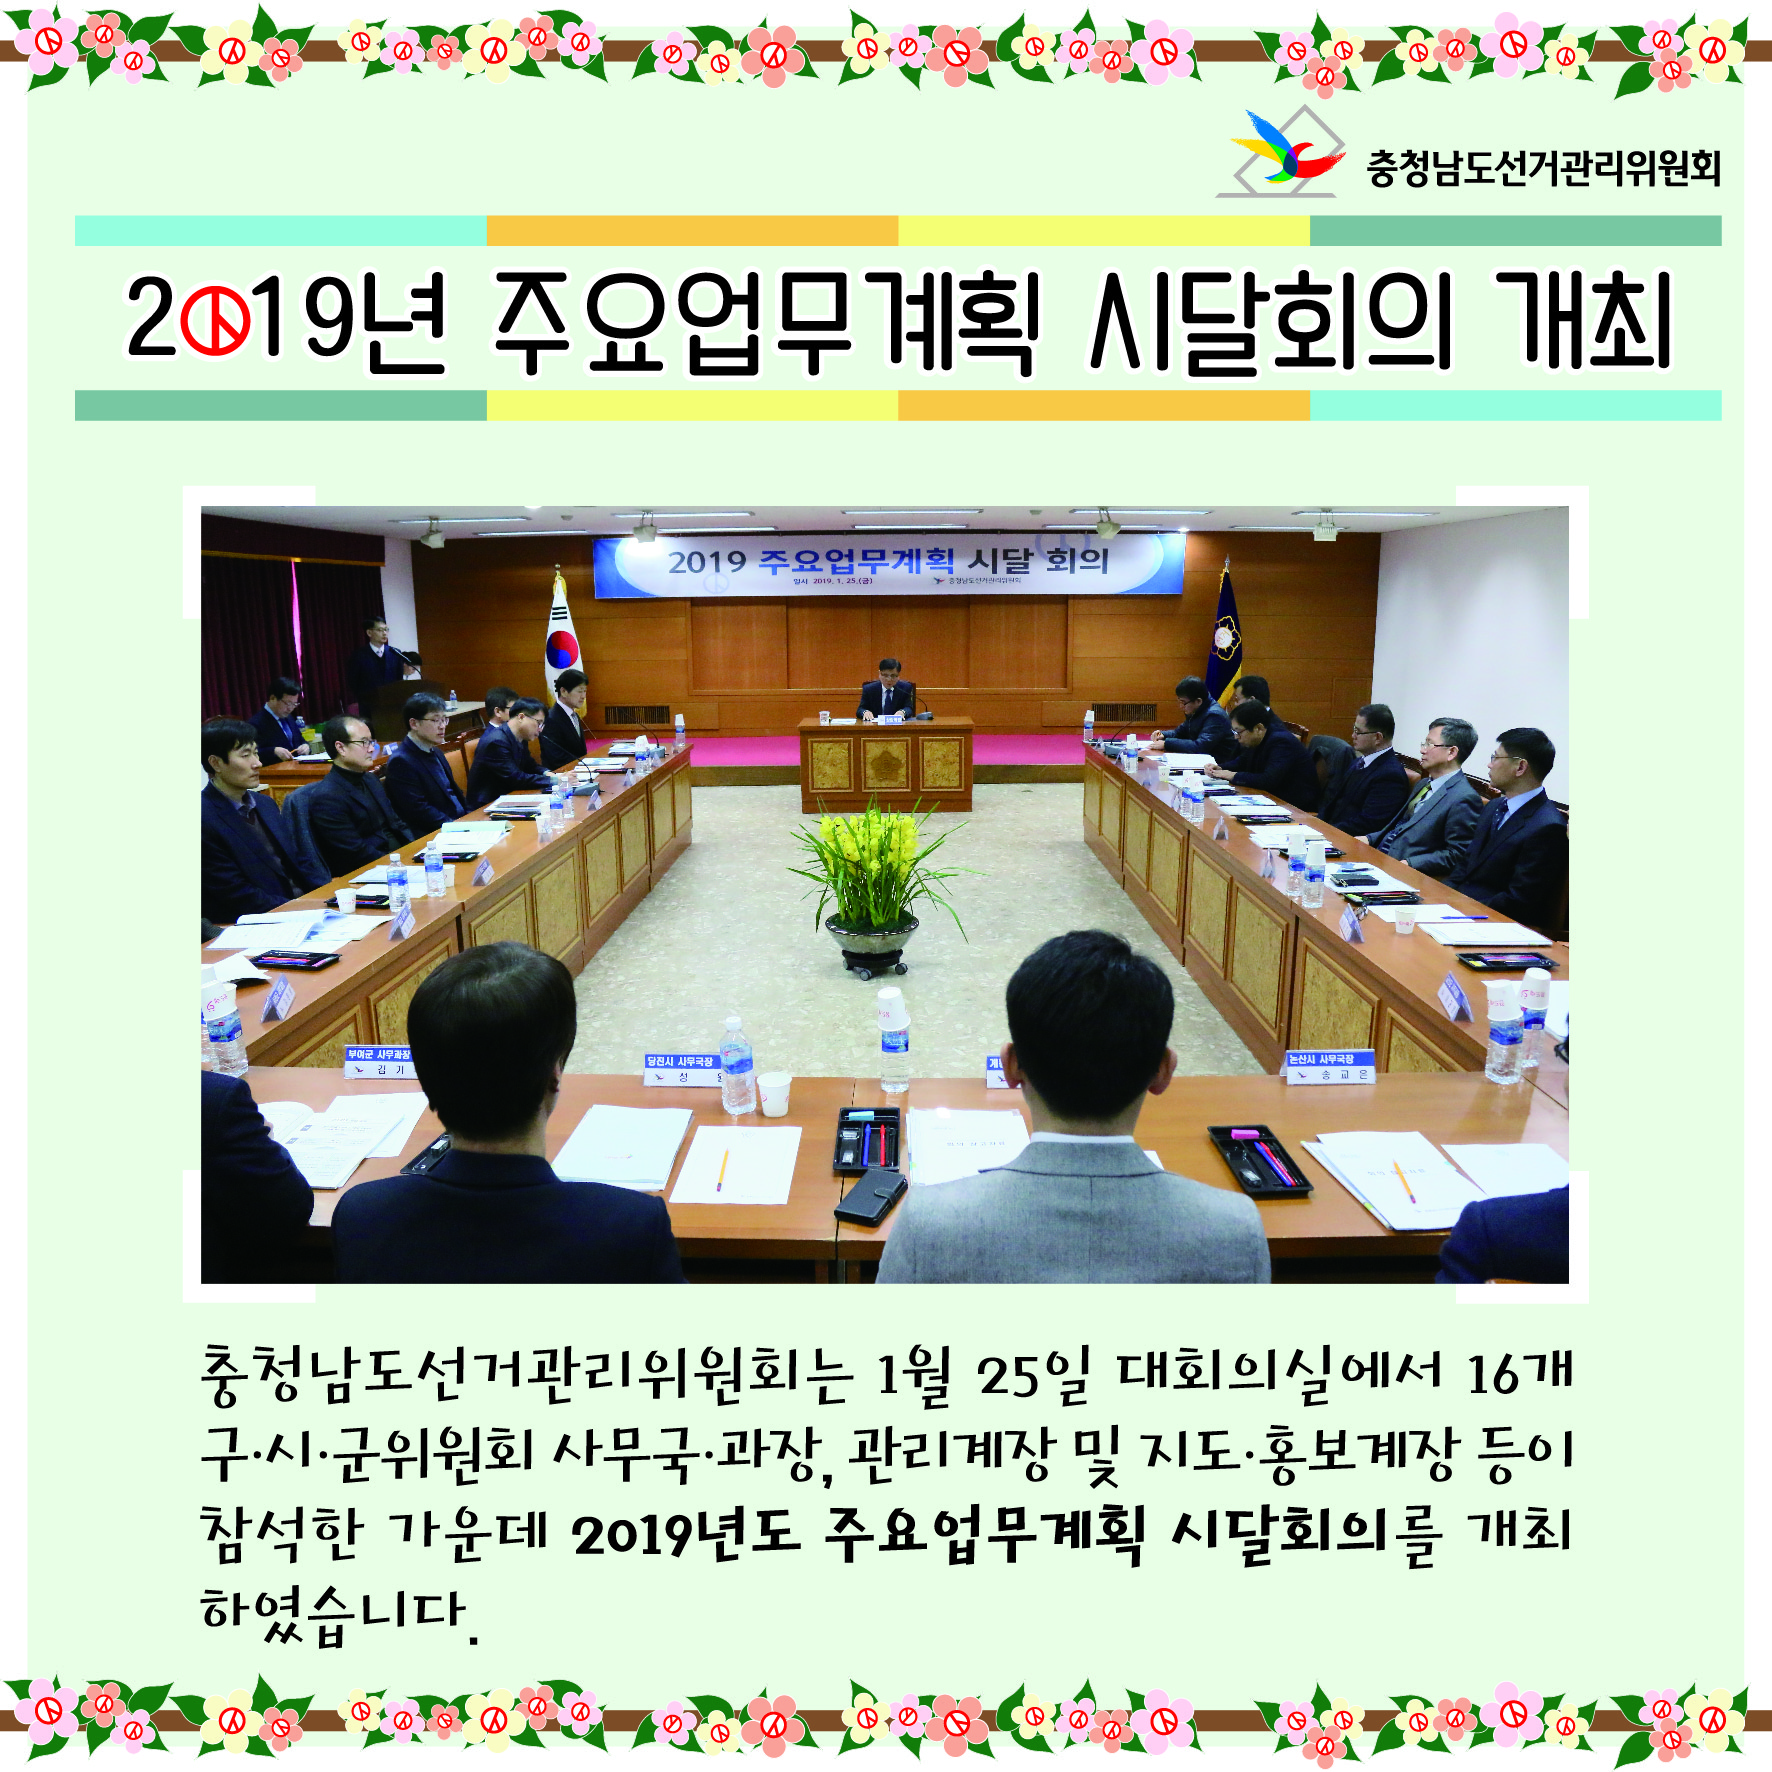 2019년 주요업무계획 시달희의개최